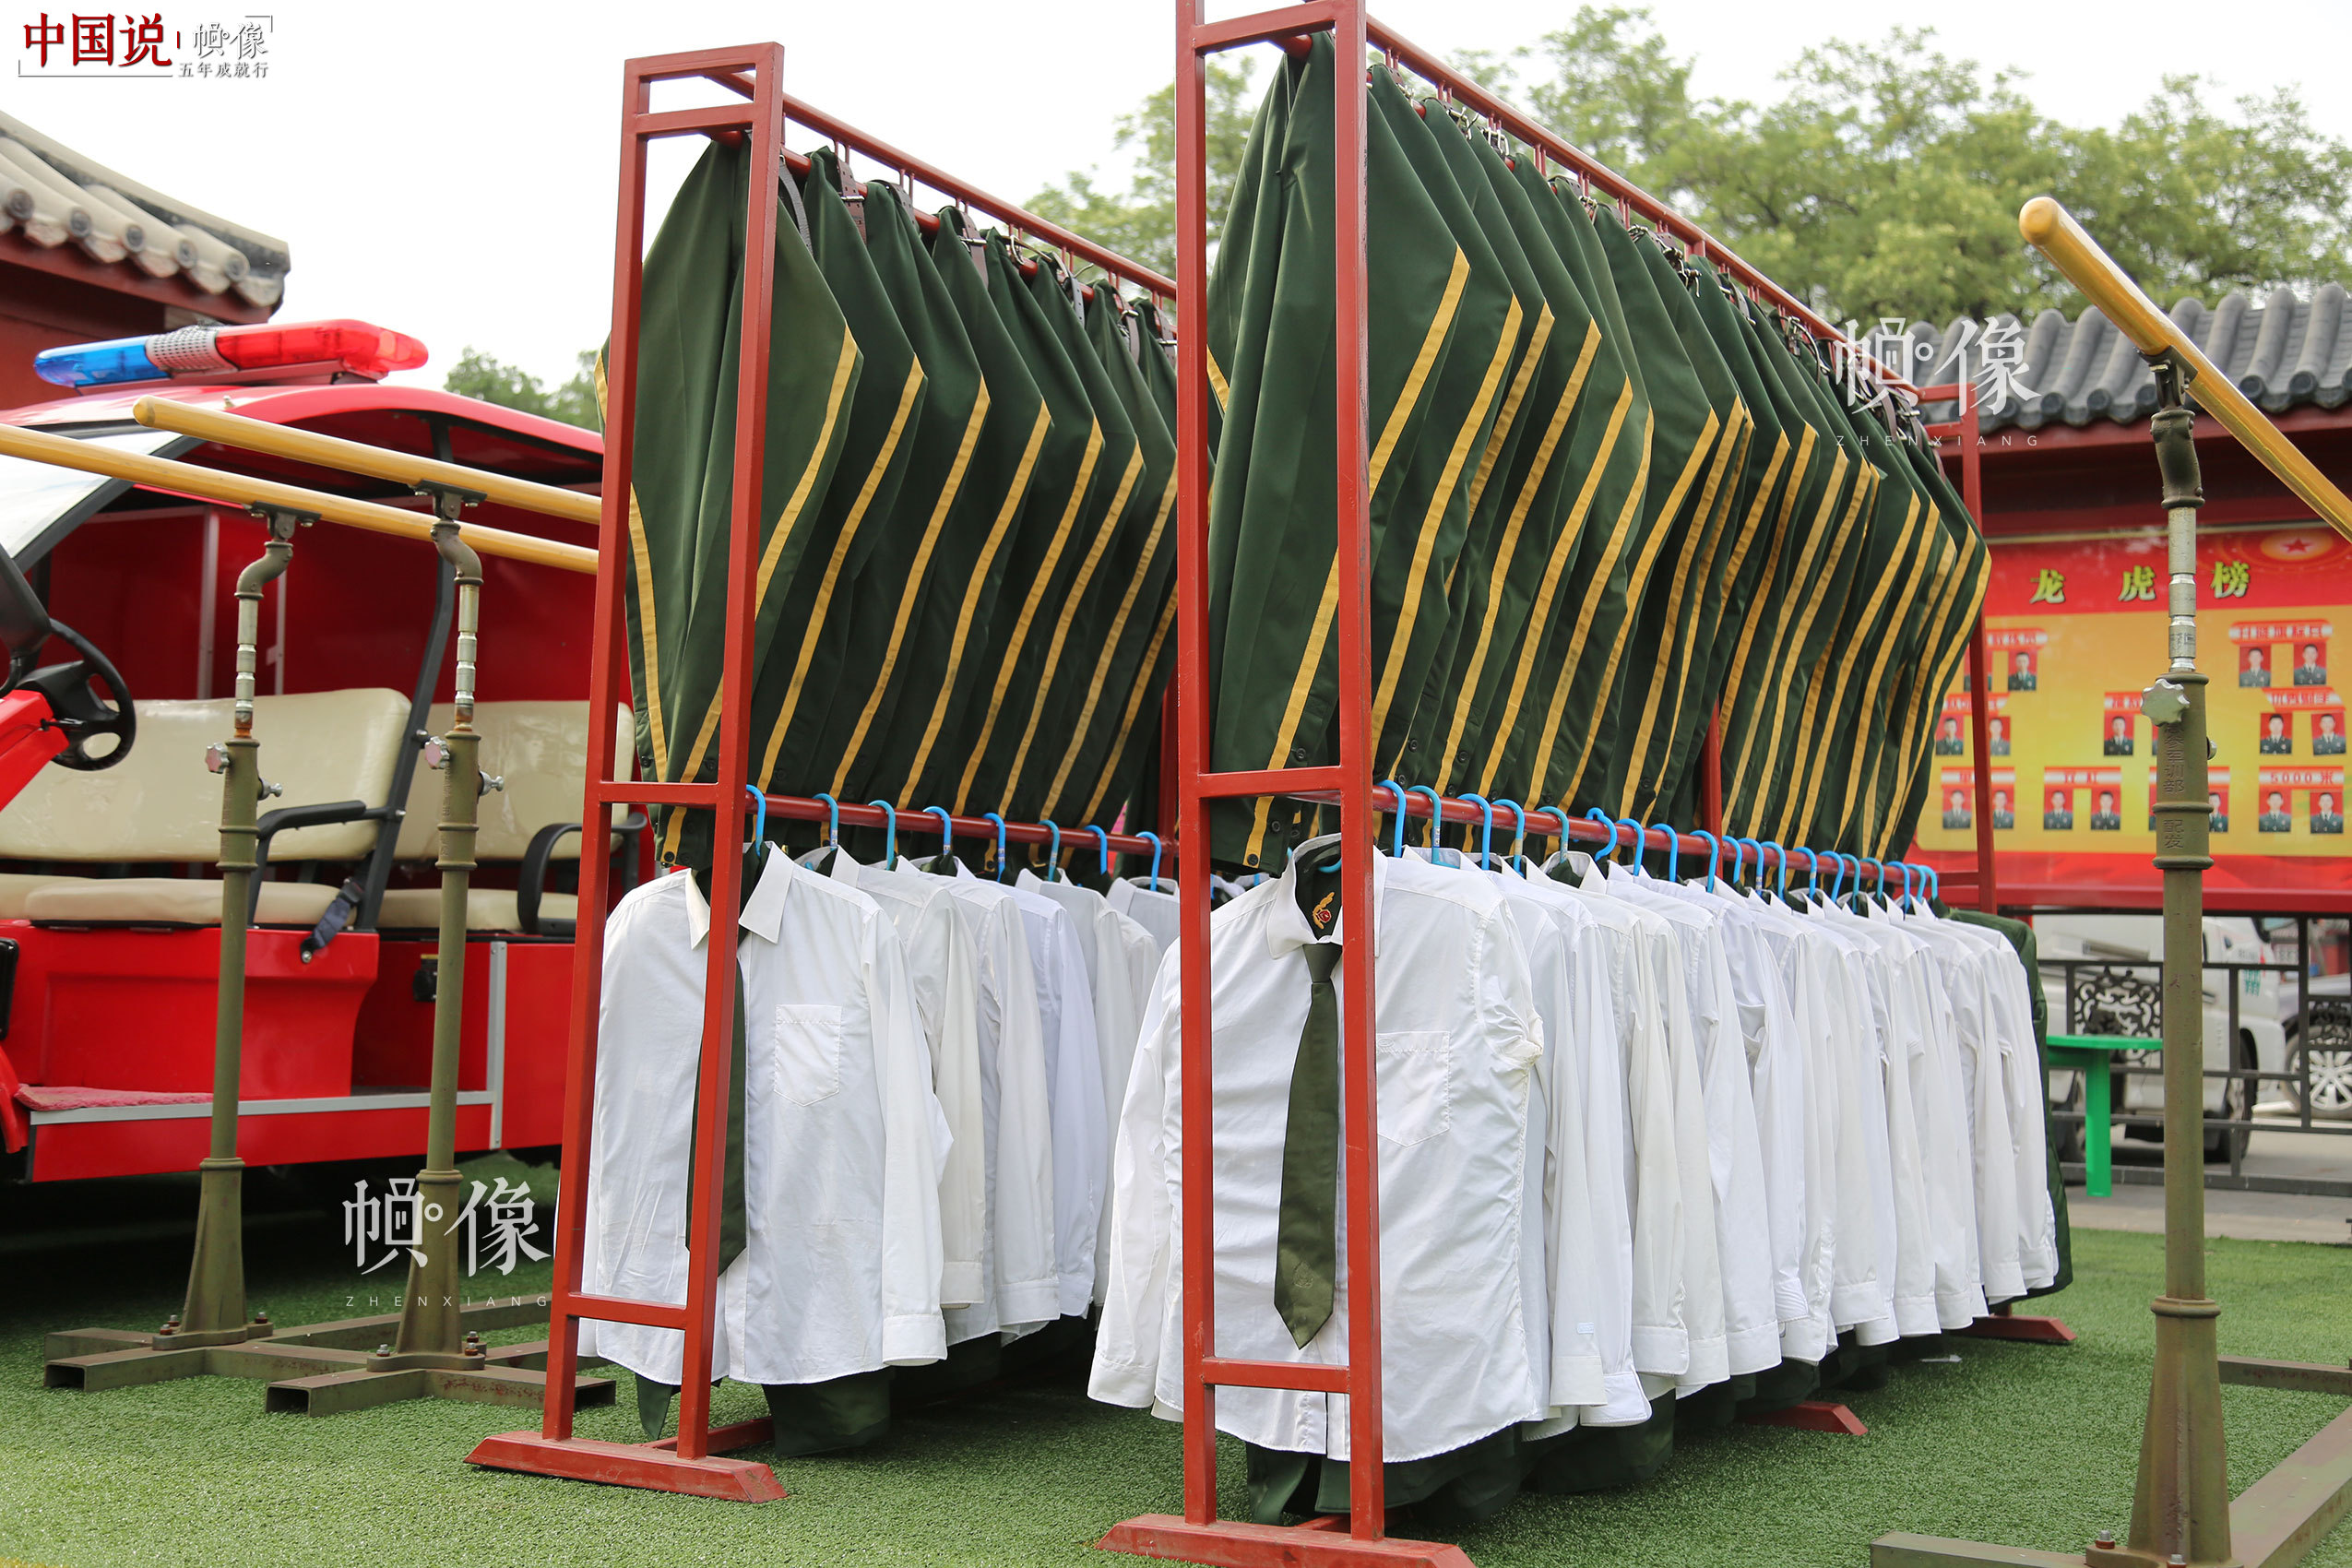 2017年7月28日，北京，国旗护卫队员汗水浸透的军装被整齐地挂在架子上晾晒。中国网记者 高南 摄